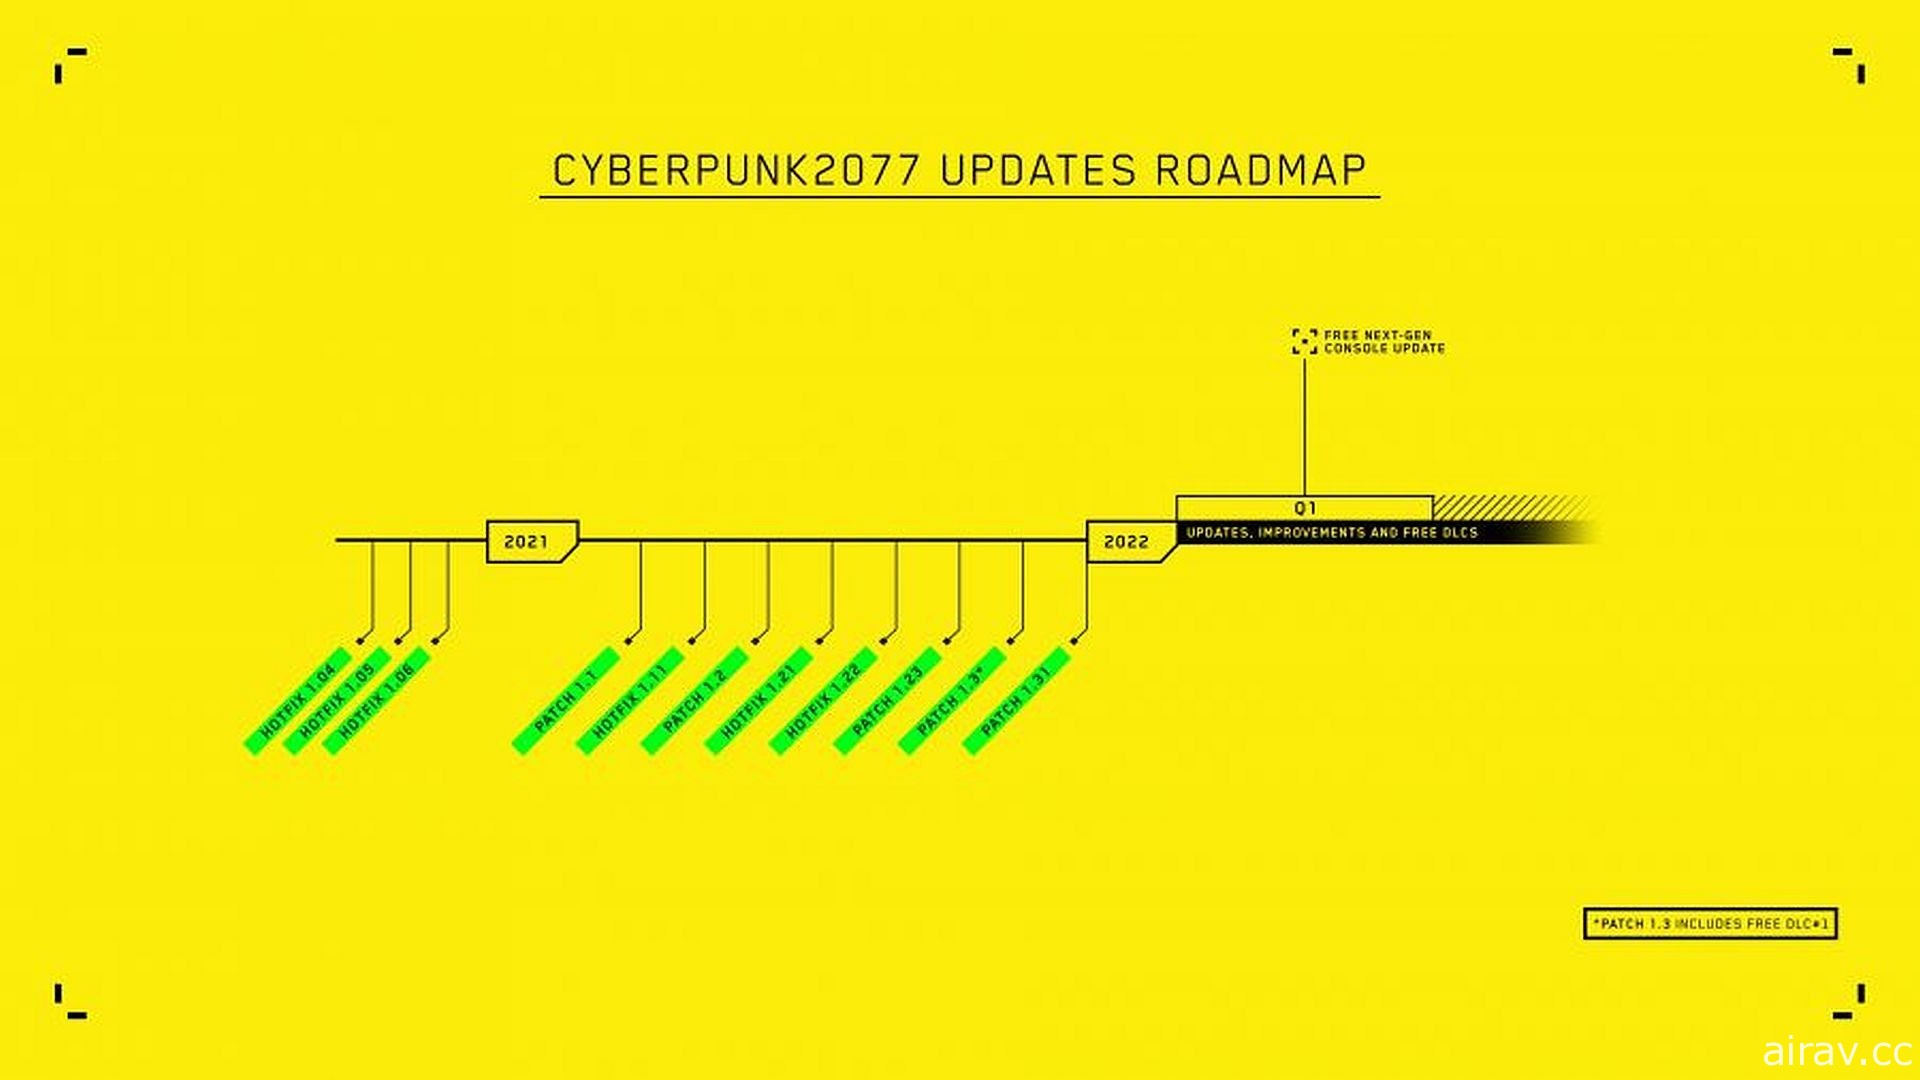 《电驭叛客 2077》低调修改官网更新路线图 后续免费 DLC 将延期至 2022 年